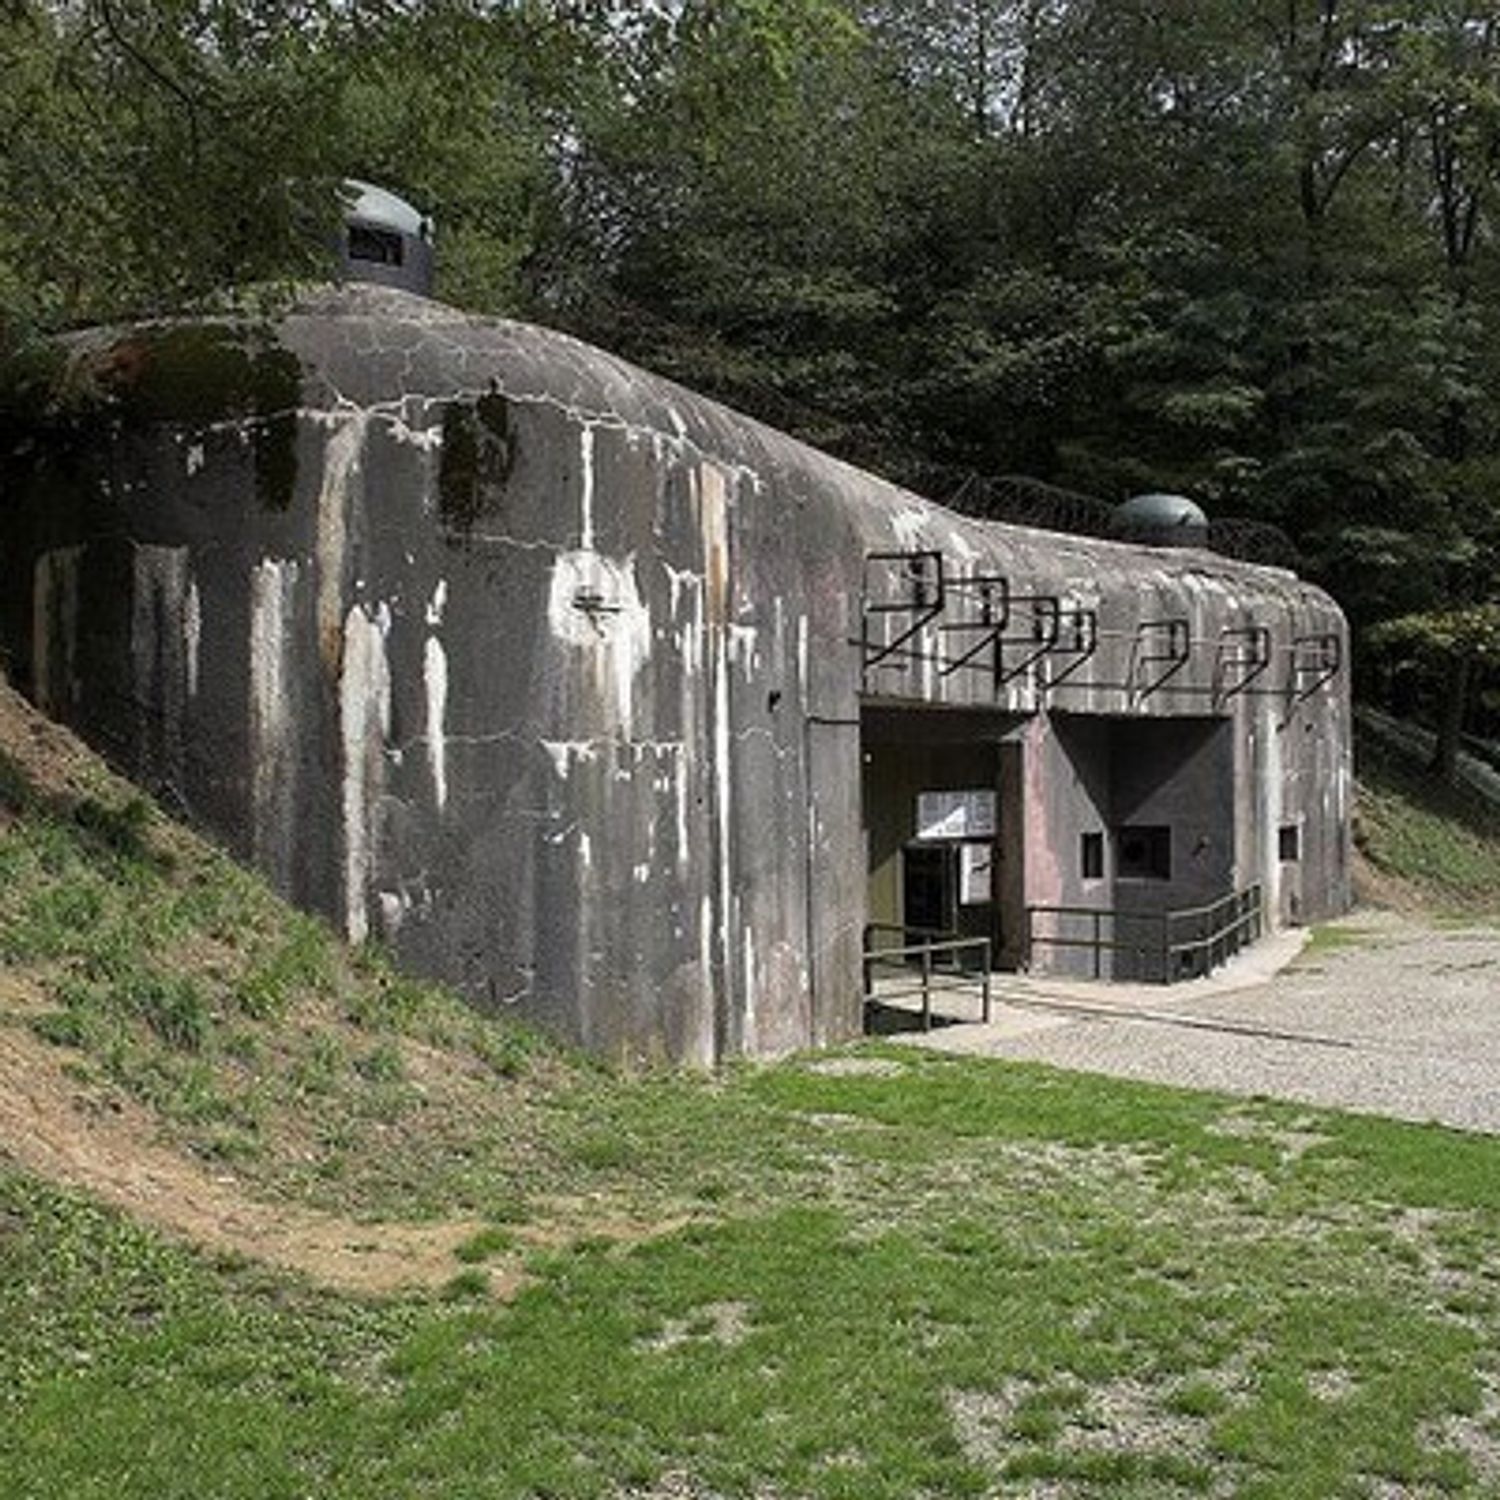 Le fort de Schoenenbourg, futur monument préféré des Français ? 